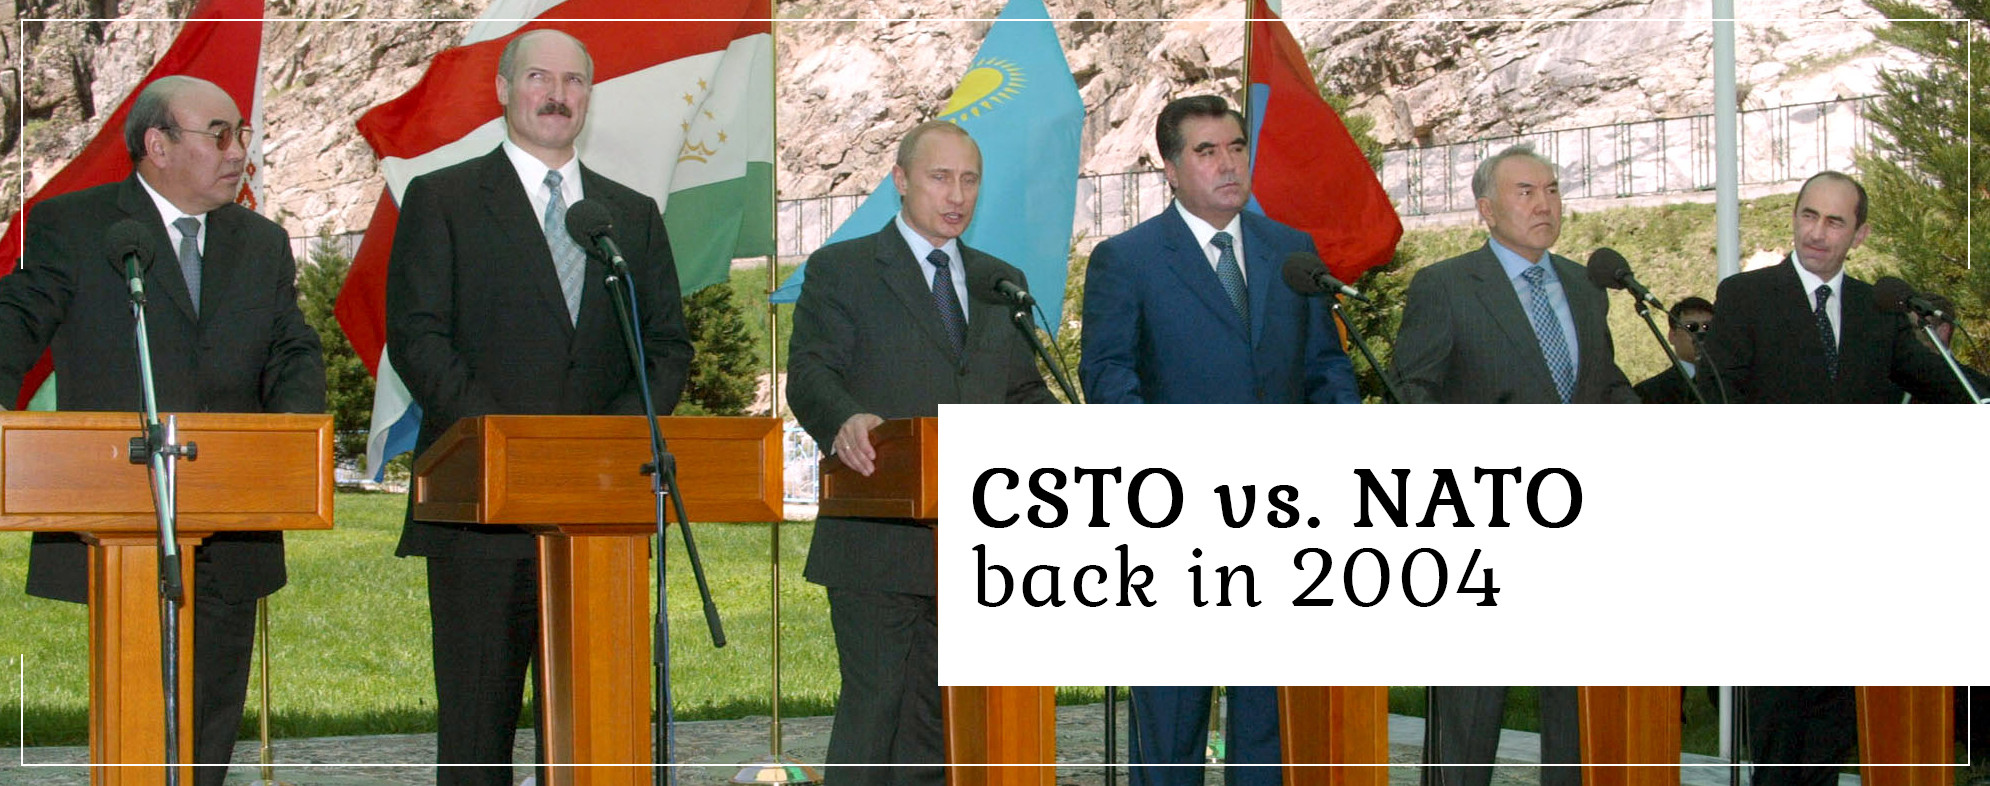 CSTO vs. NATO back in 2004